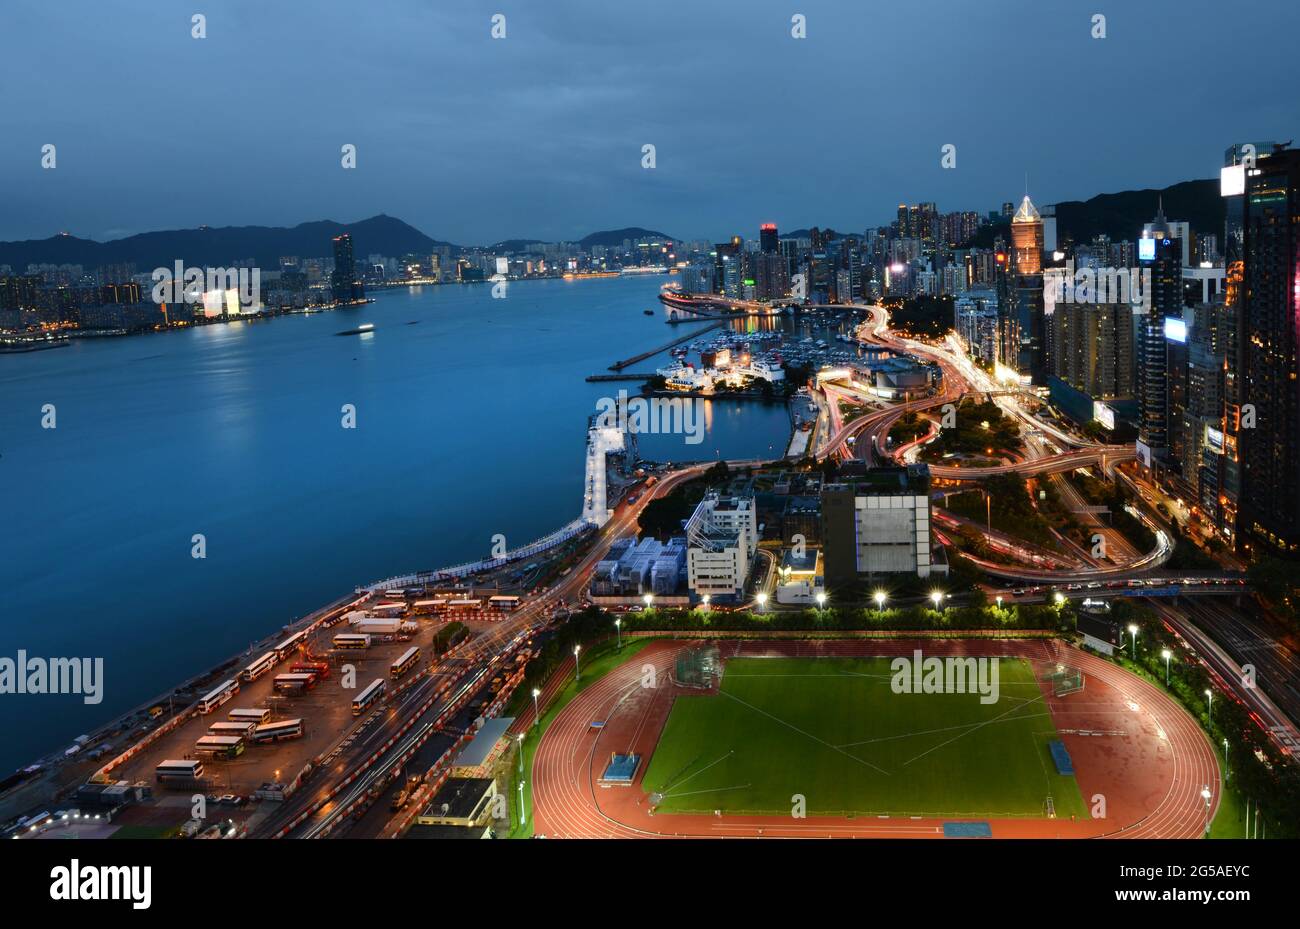 Blick auf den Hafen von Victoria und die Uferpromenade der HK-Insel in Causway Bay, Hongkong. Stockfoto